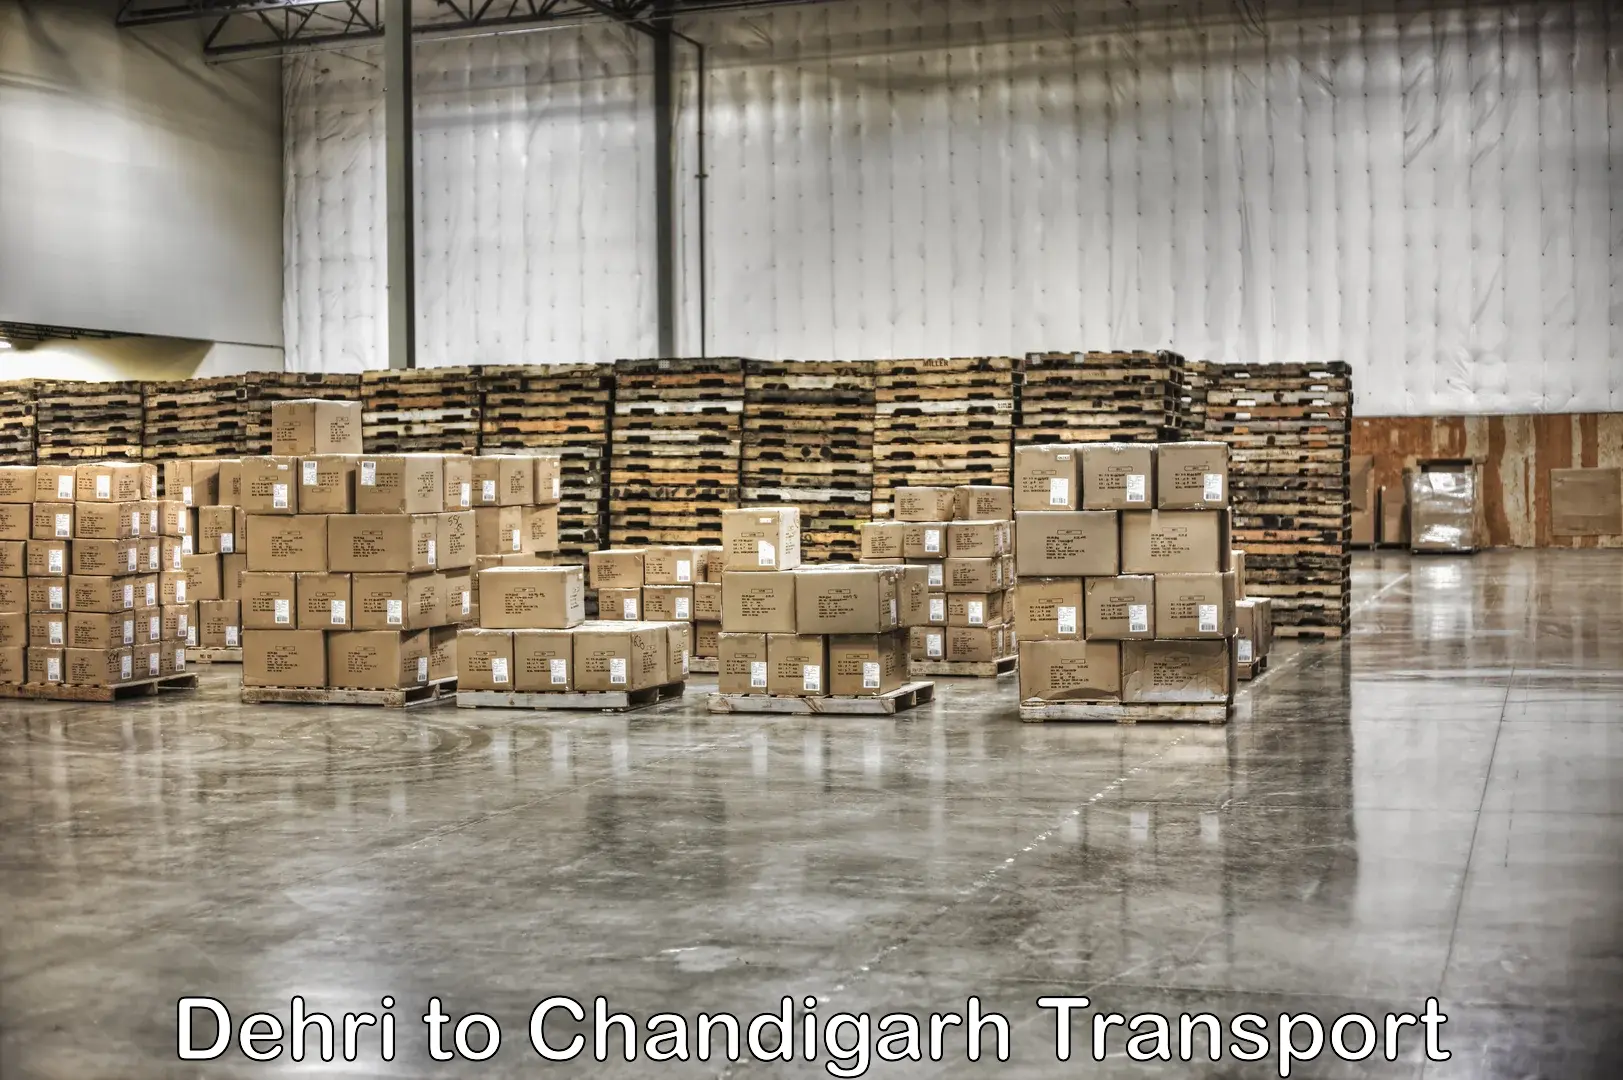 Transport services in Dehri to Chandigarh